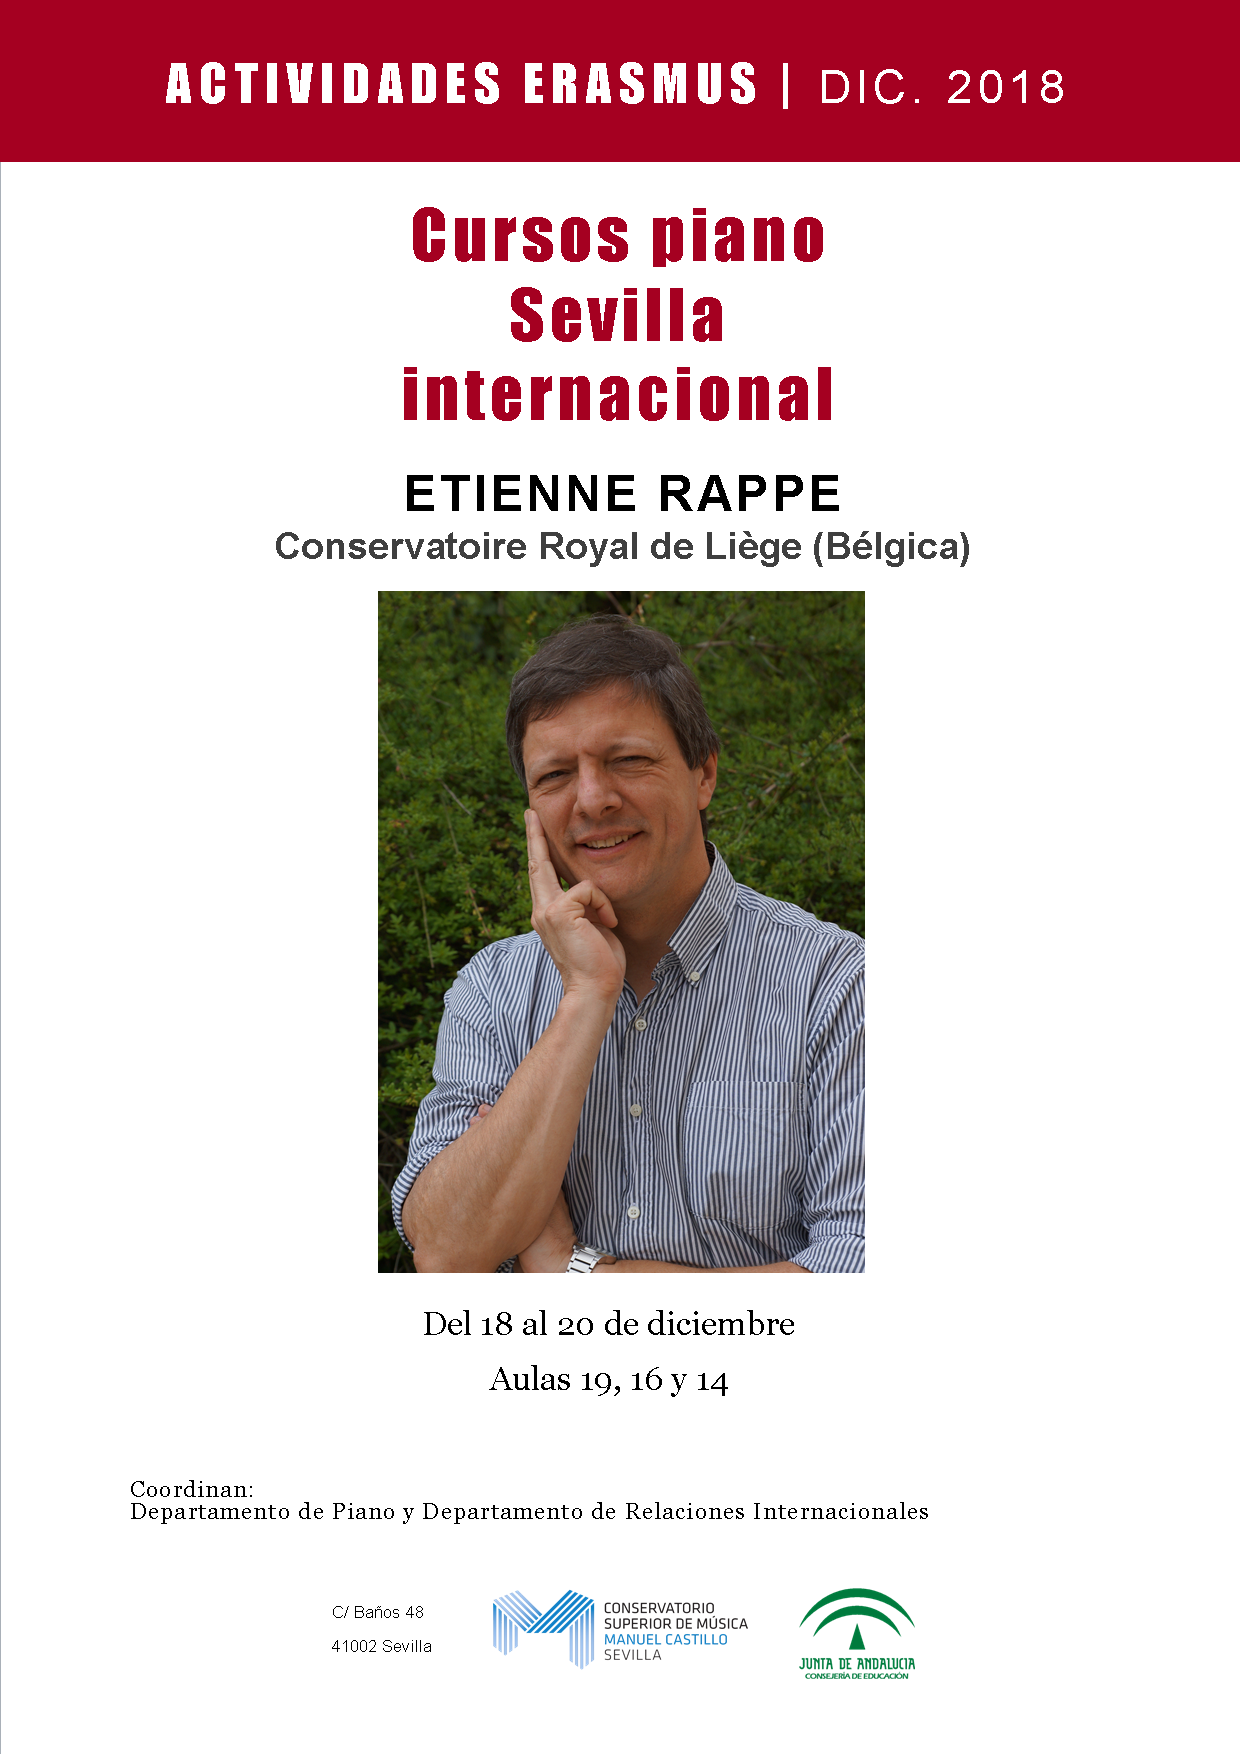 Curso de piano y recital — Etienne Rappe